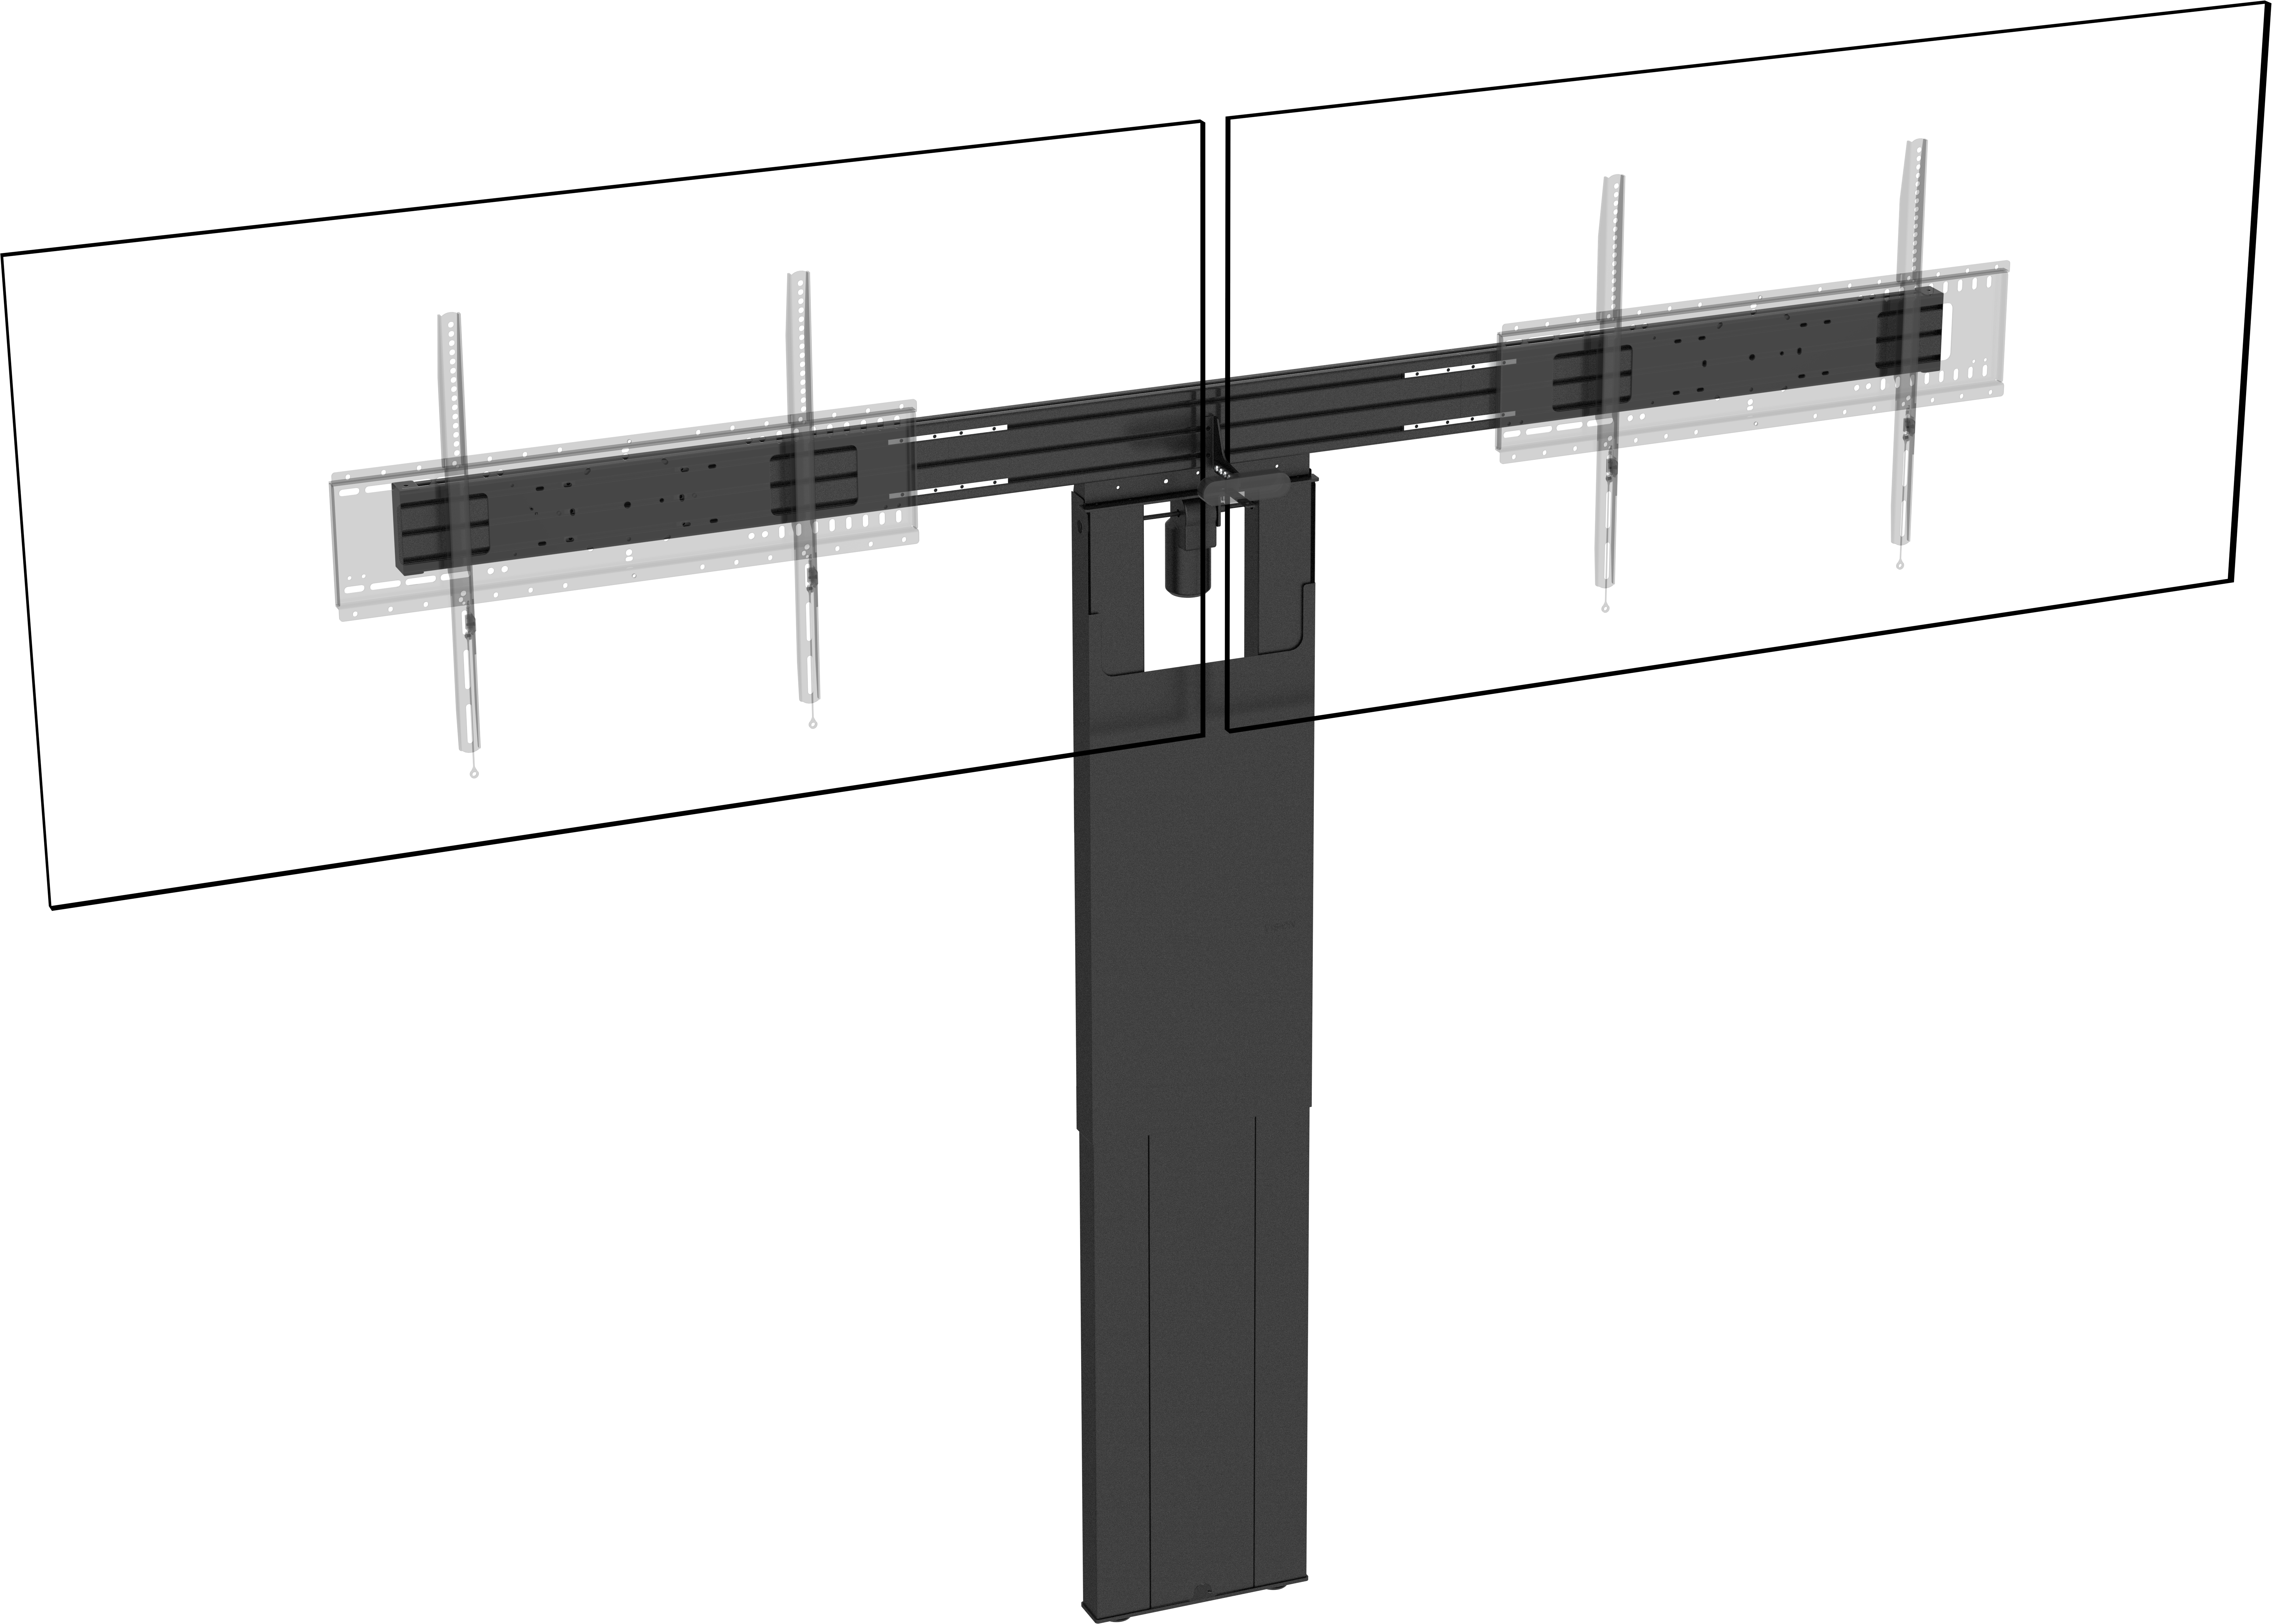 An image showing VFM-F51/DL Suporte de Chão para Dois Painéis Planos